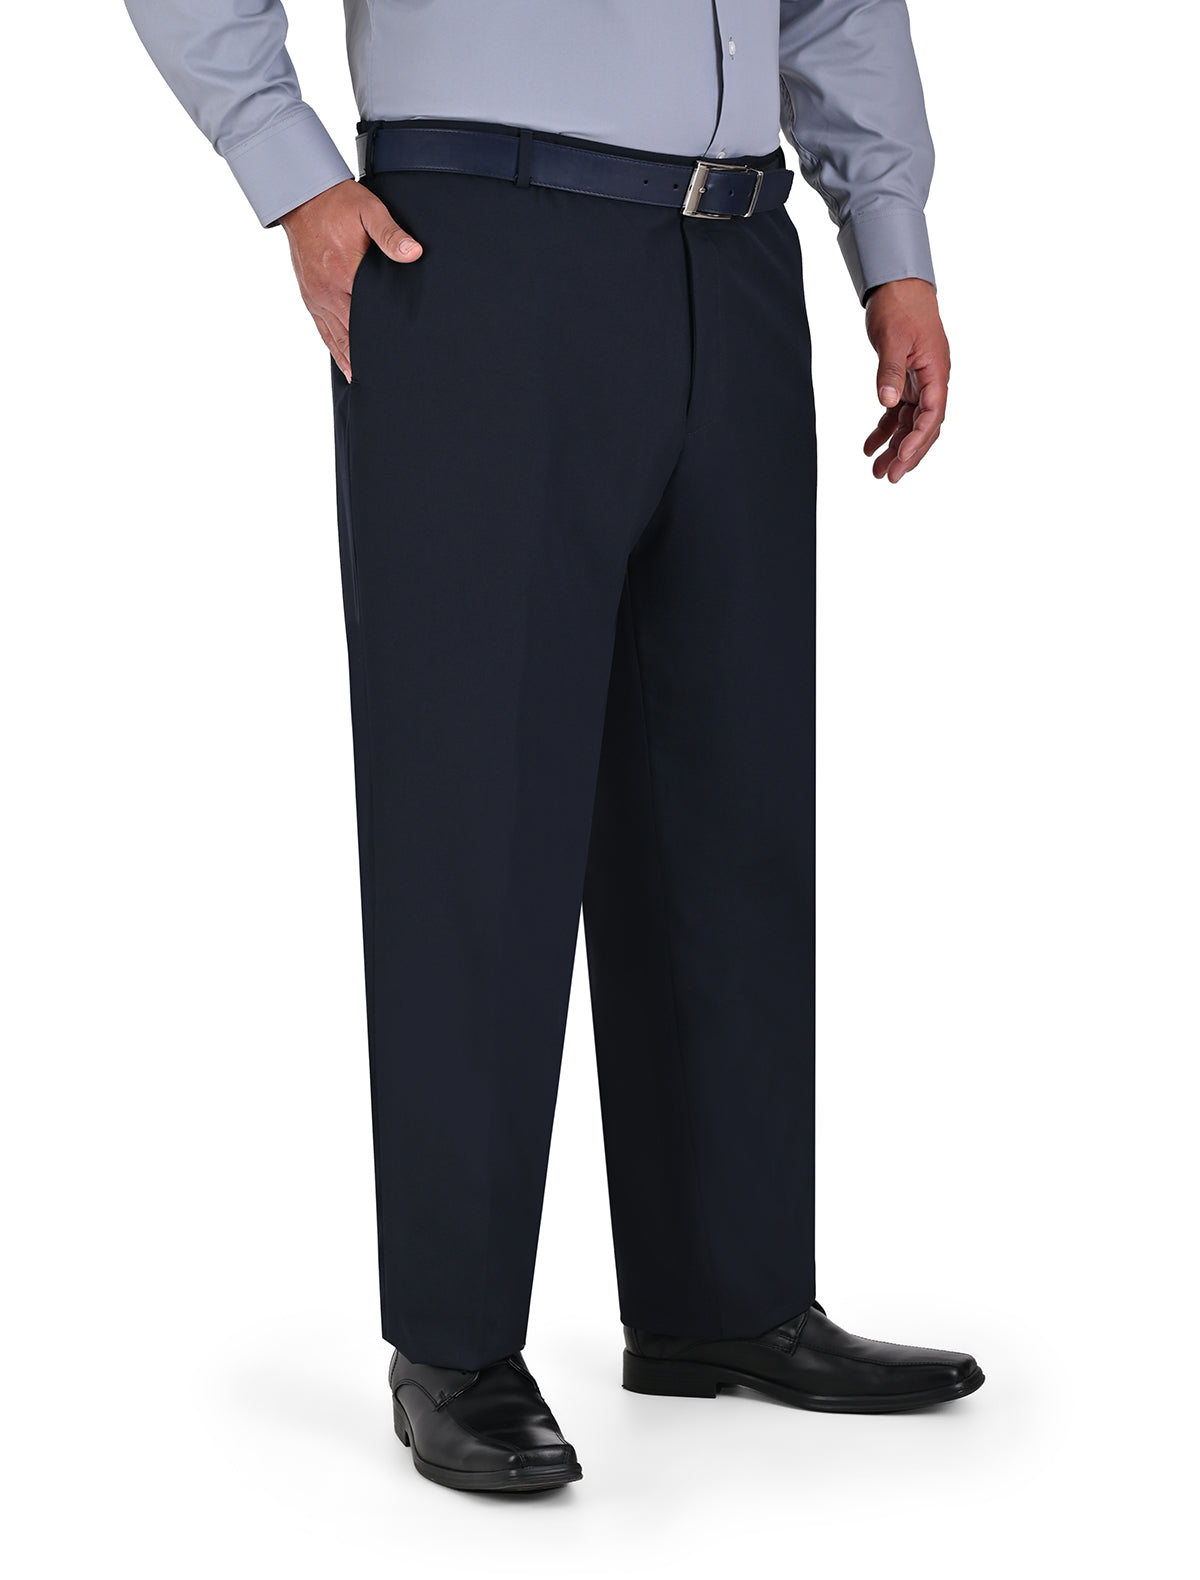 Pantalón de Vestir Azul Marino (Talla Extra) Euroflex